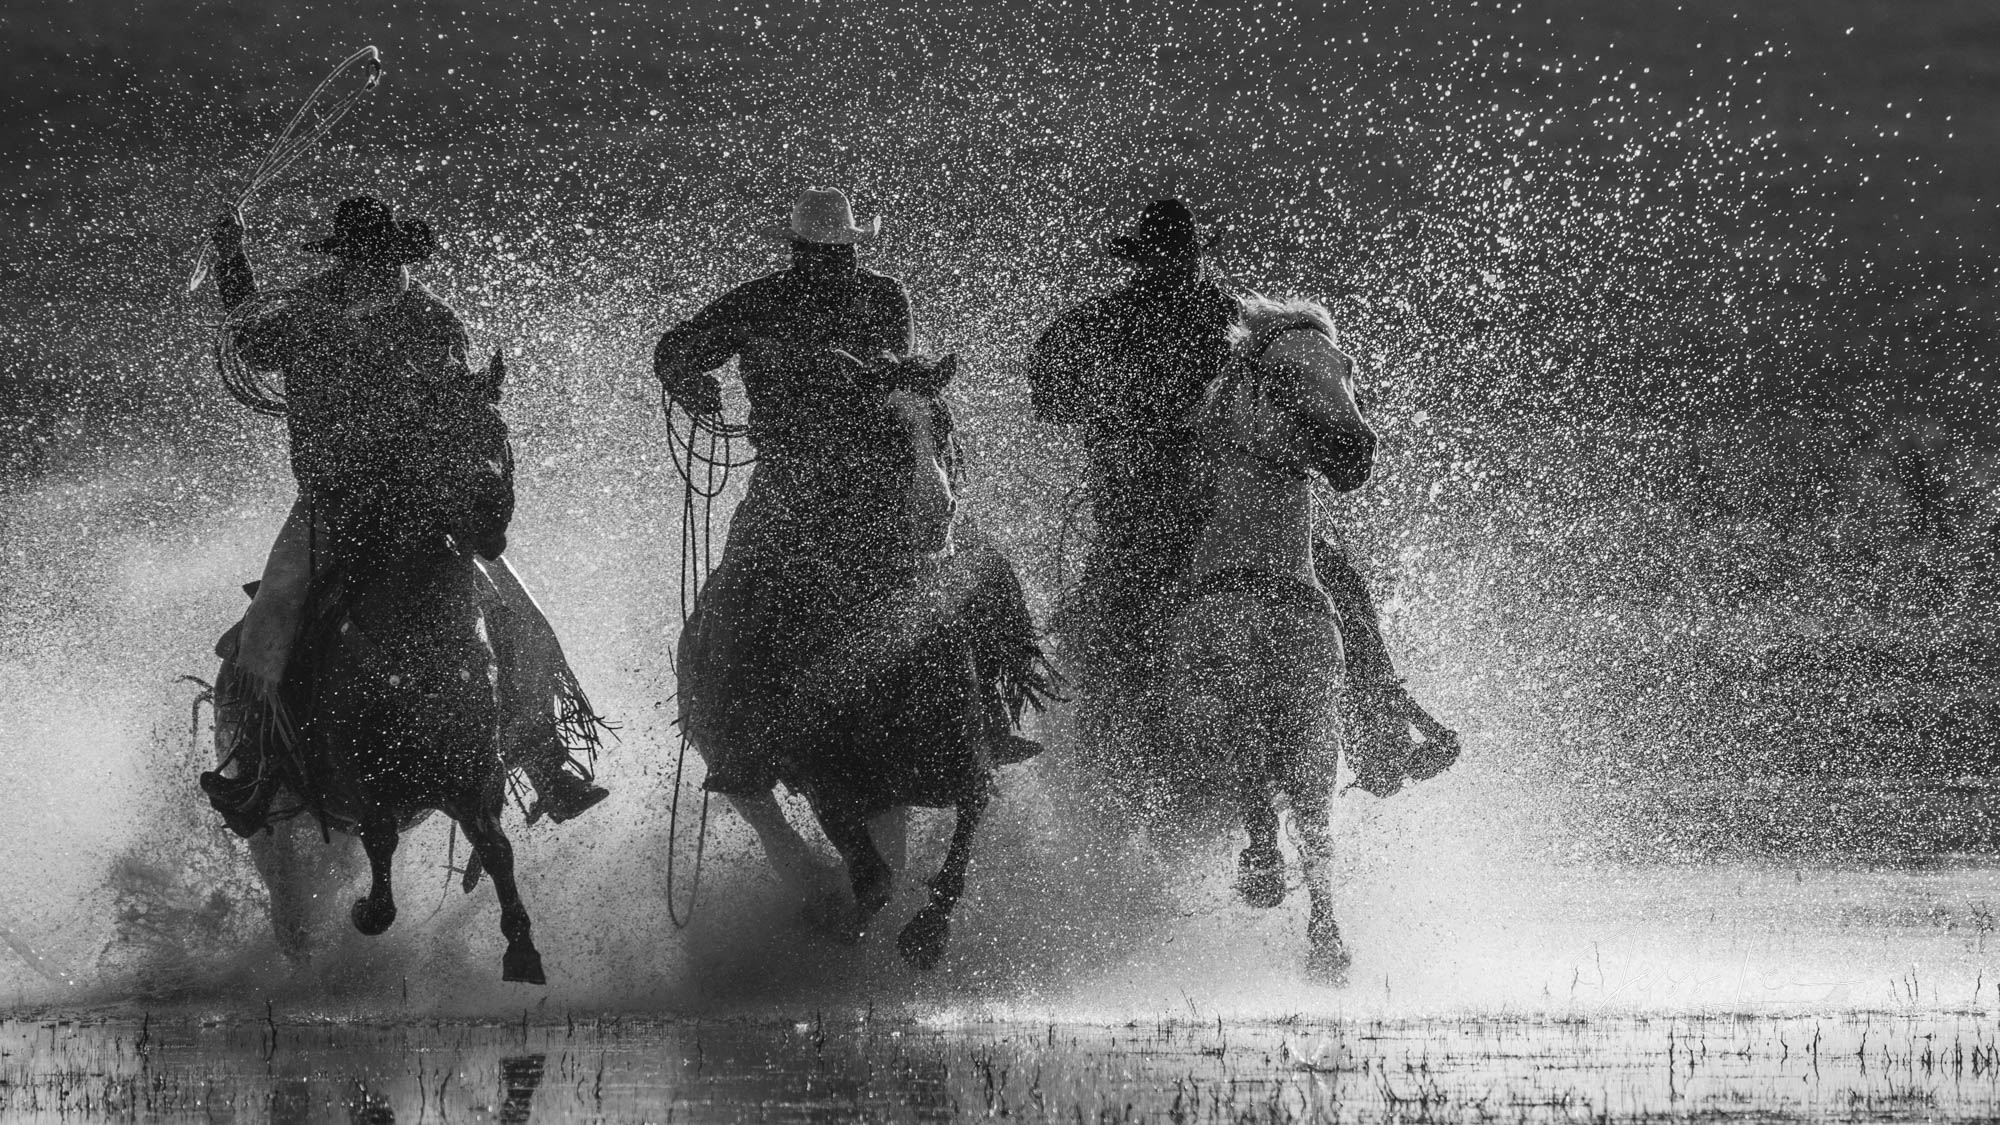 Black and White Photography, Horse Photos, Cowboy Photos